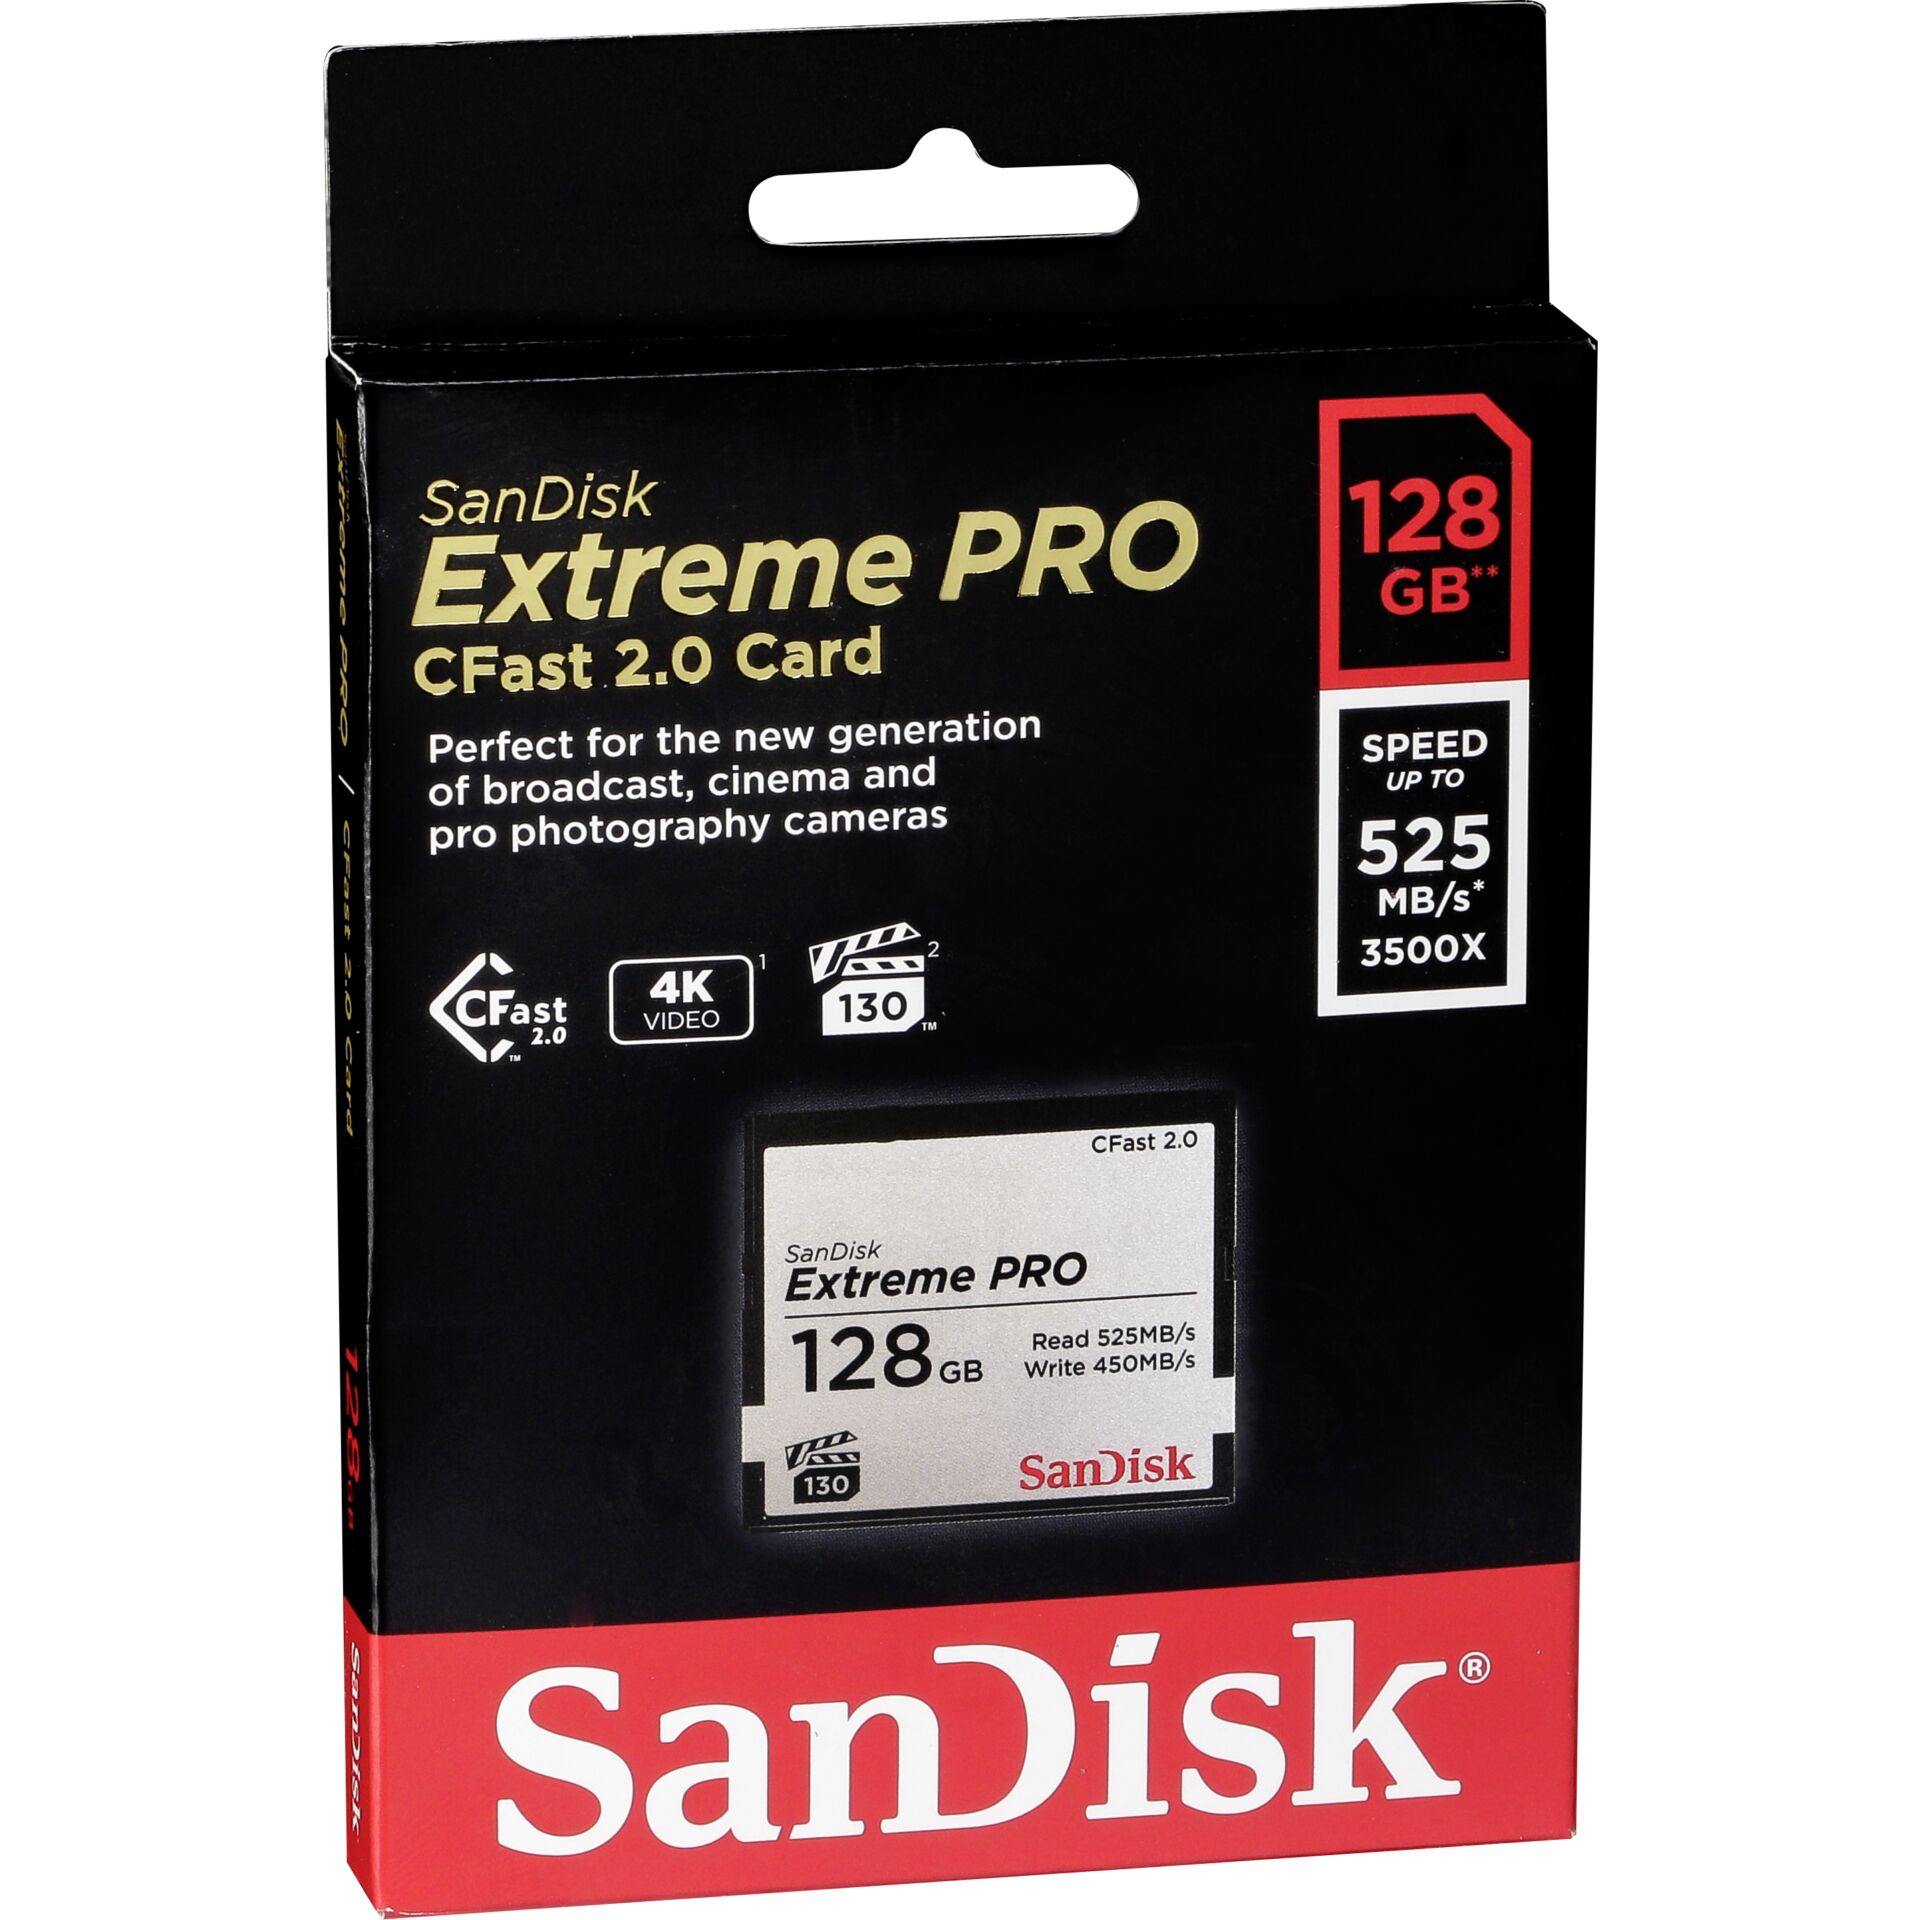 128 GB SanDisk Extreme PRO CFast 2.0 CompactFlash Card [CFAST2.0] Speicherkarte, lesen: 525MB/s, schreiben: 450MB/s